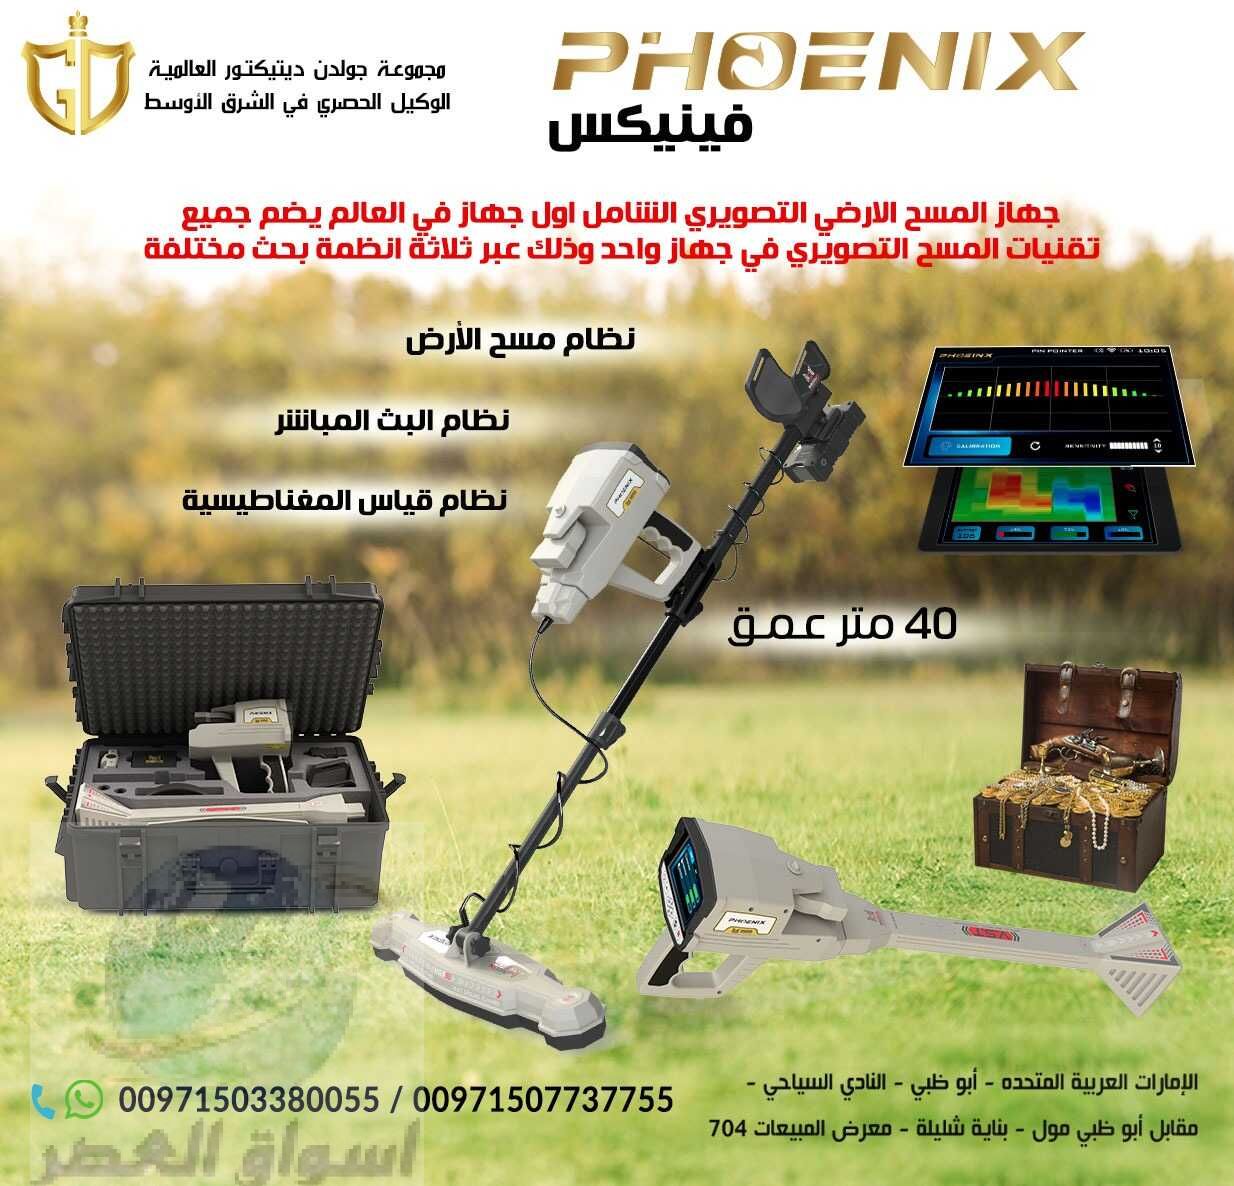 جهاز فينيكس – Phoenix جهاز كشف المعادن التصويري